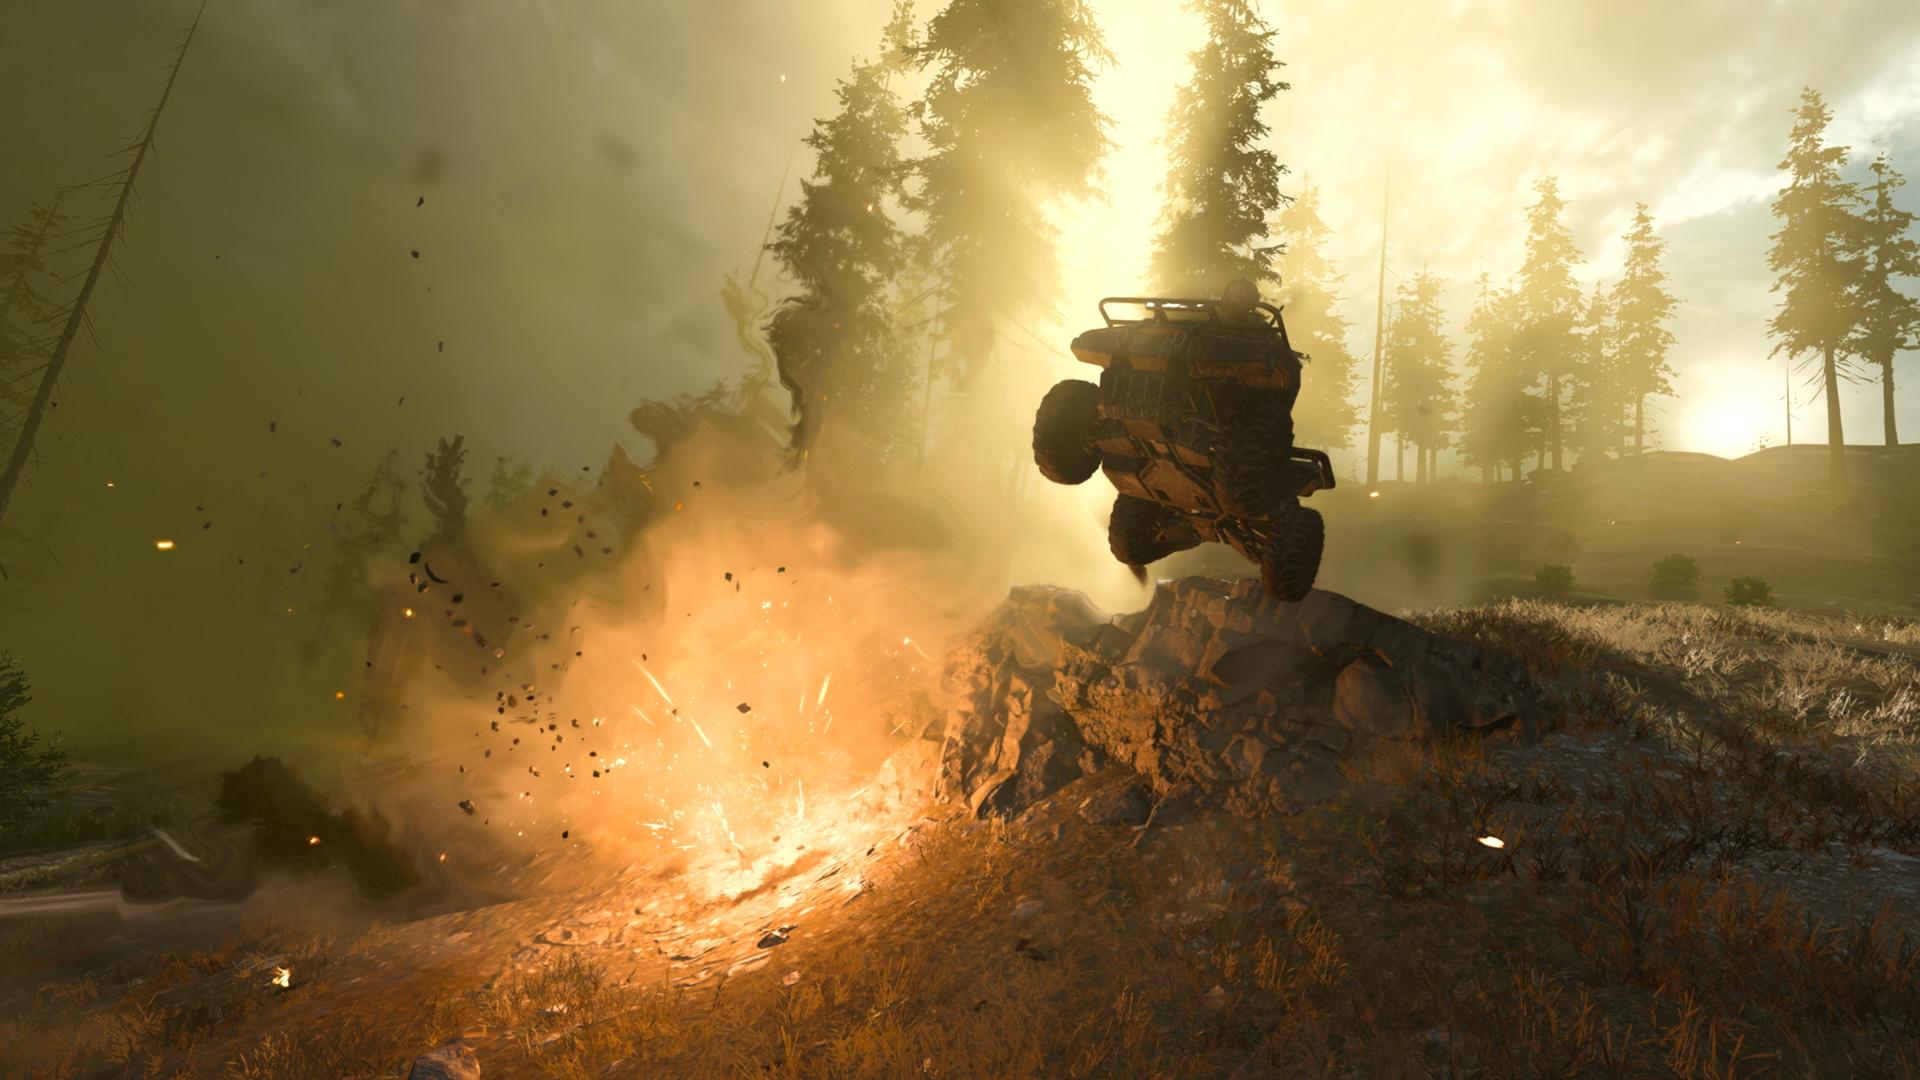 Warzone vehicle gameplay